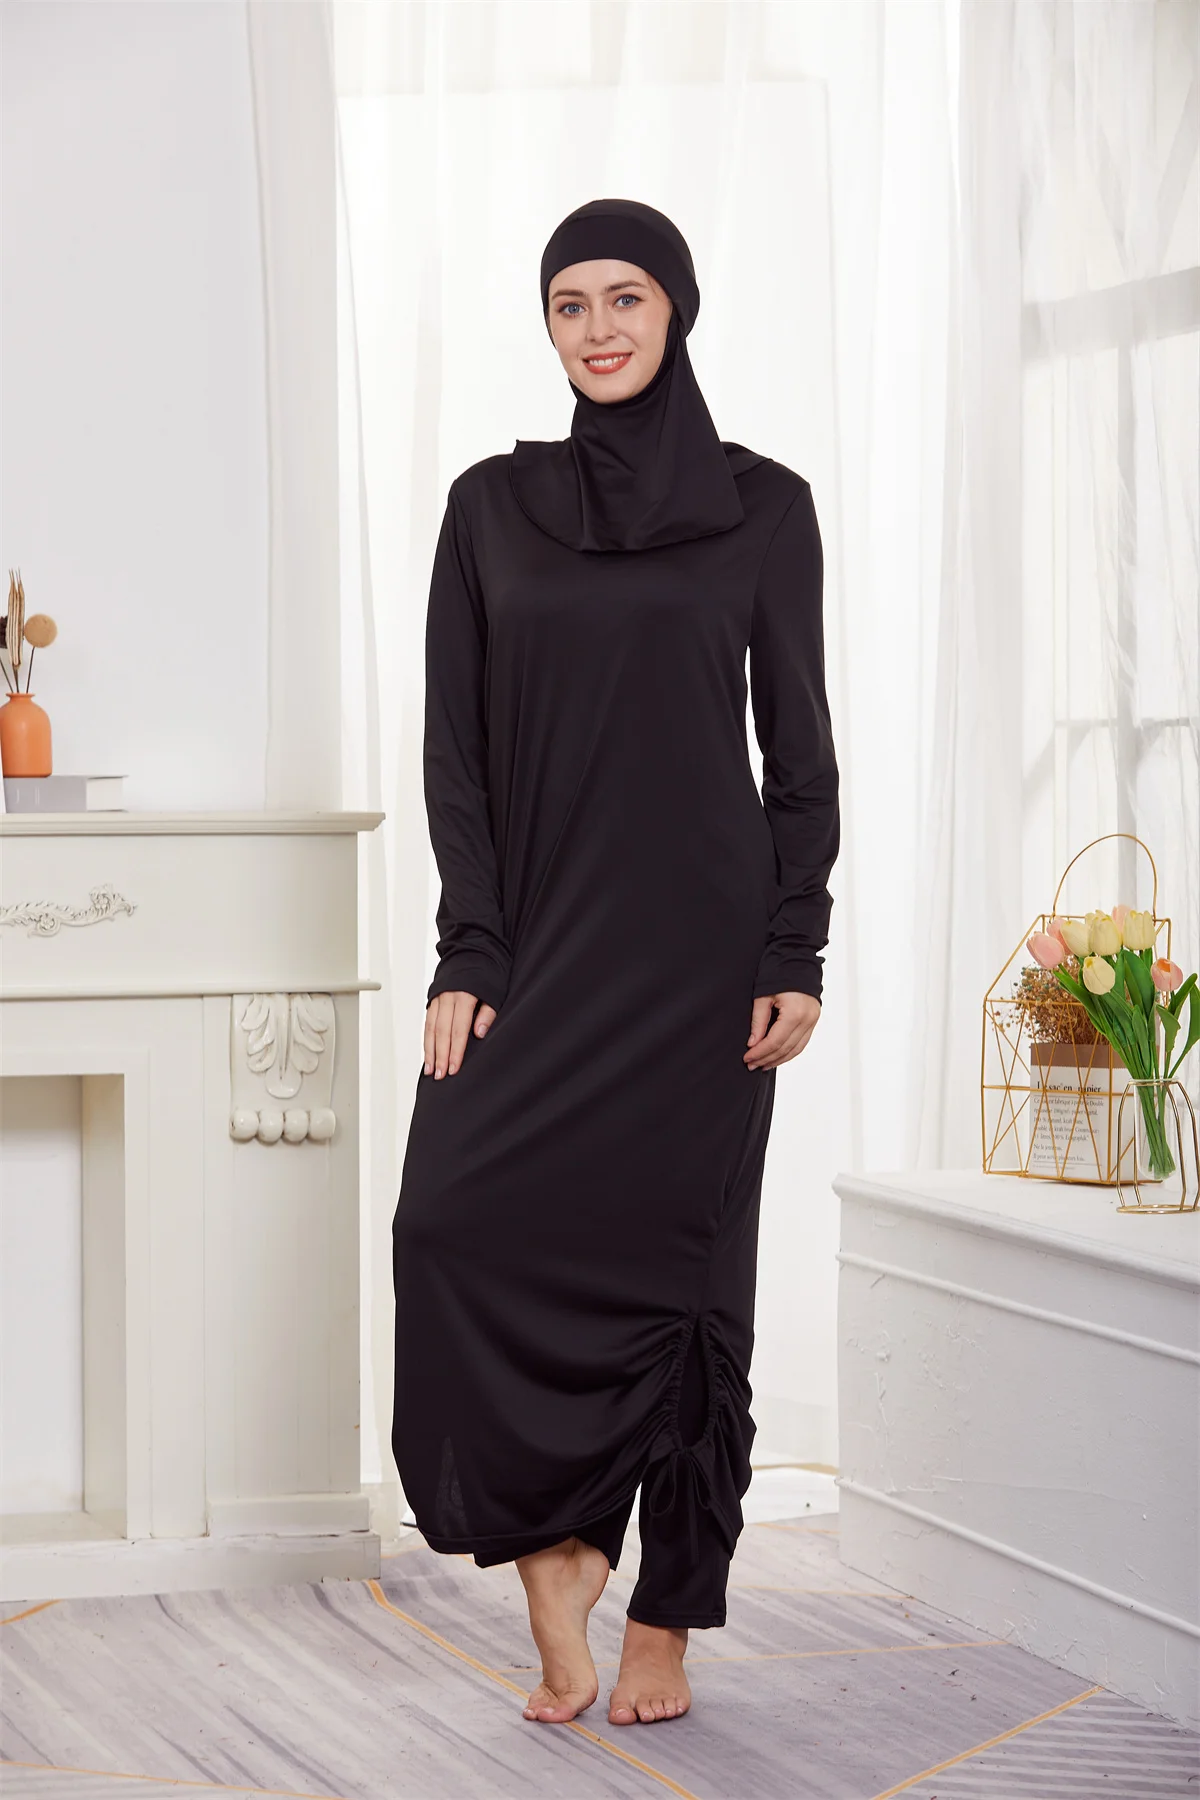 Мусульманские скромные буркини, женские купальники с длинным рукавом для всего тела, Исламский купальник, Пляжная одежда, комплекты шапочек-хиджабов для плавания 3